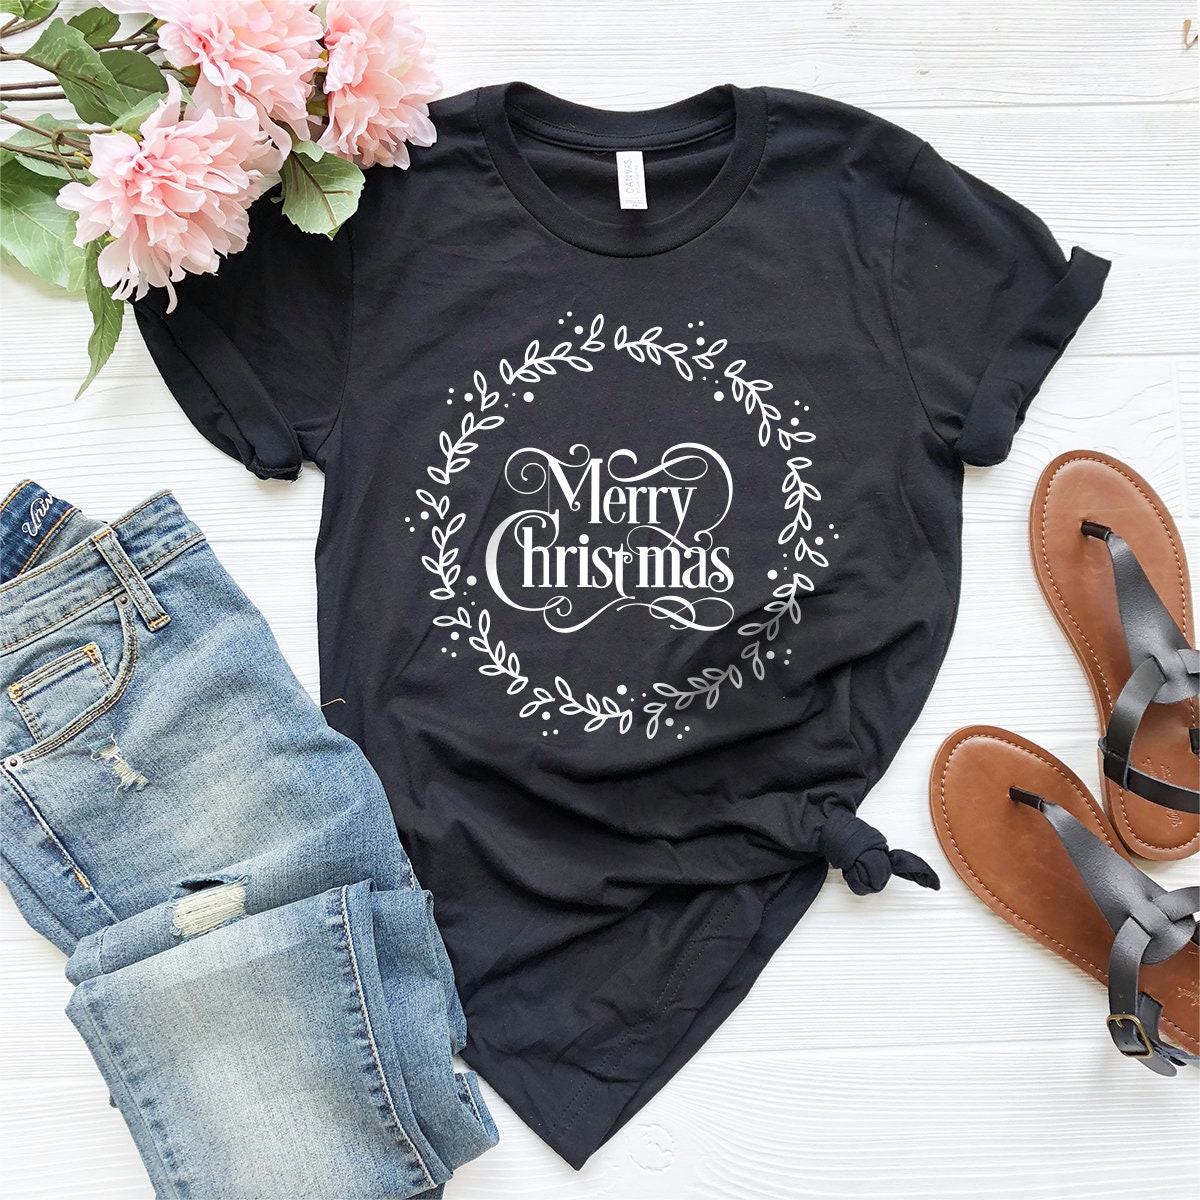 Merry Christmas Shirts, Christmas T Shirt, Christmas Pajamas, Xmas Party Shirt, Gift For Christmas, Funny Christmas Tee, Holiday T Shirt - Fastdeliverytees.com